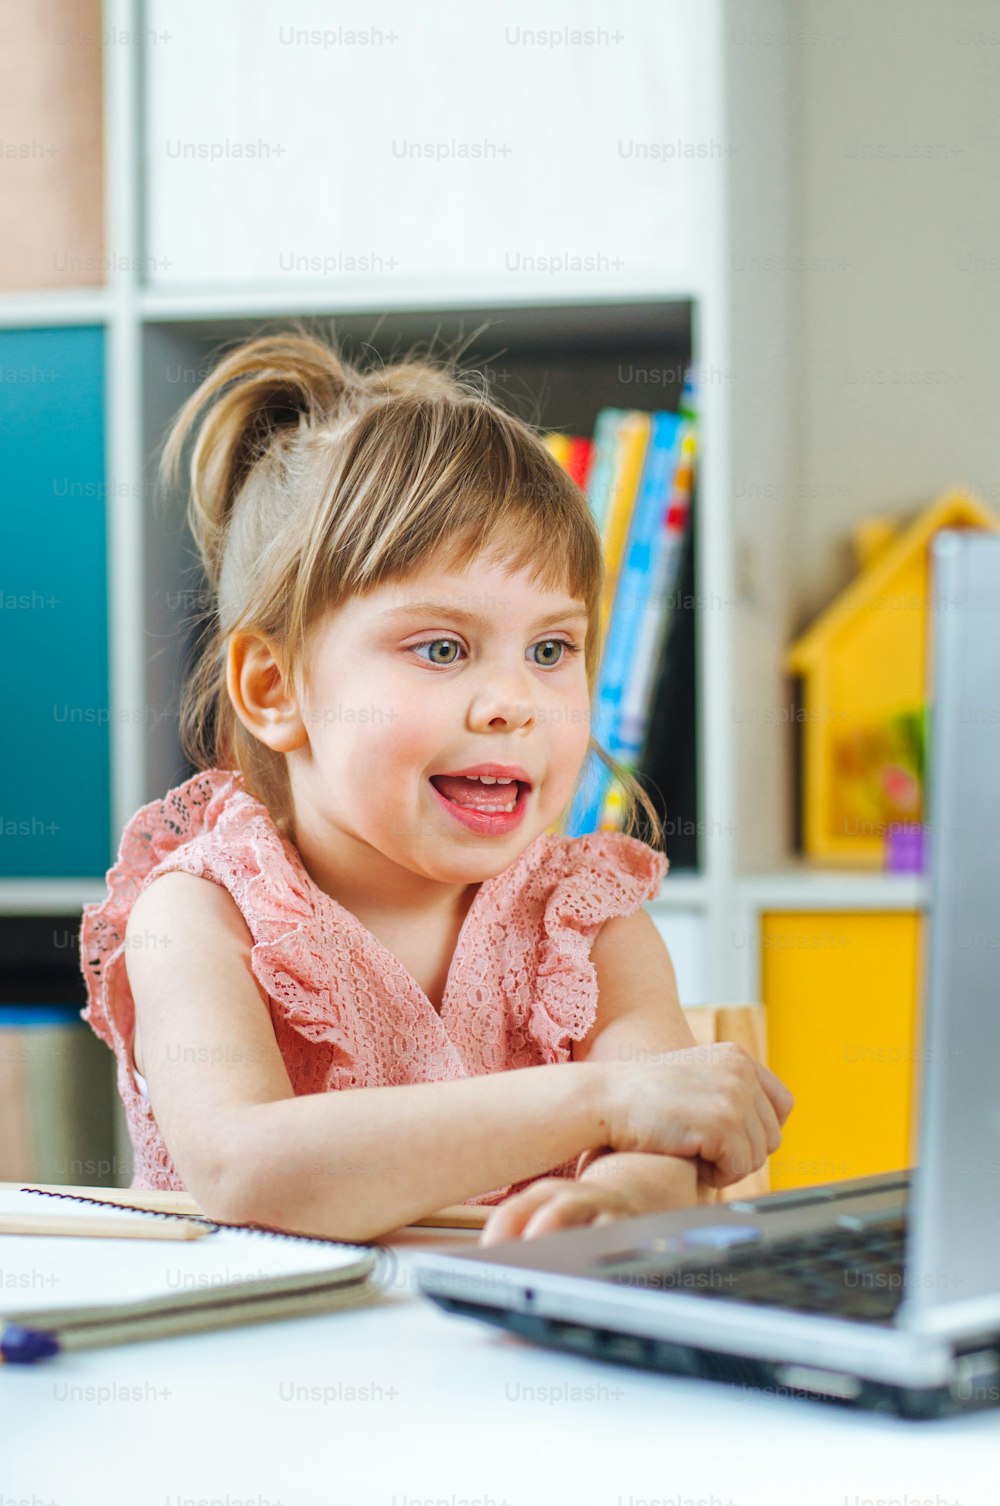 원격 학습을 위해 노트북을 사용하는 행복한 어린 유아 소녀는 아이 방의 테이블에 앉아 있습니다. 원격 온라인 학습 개념입니다.